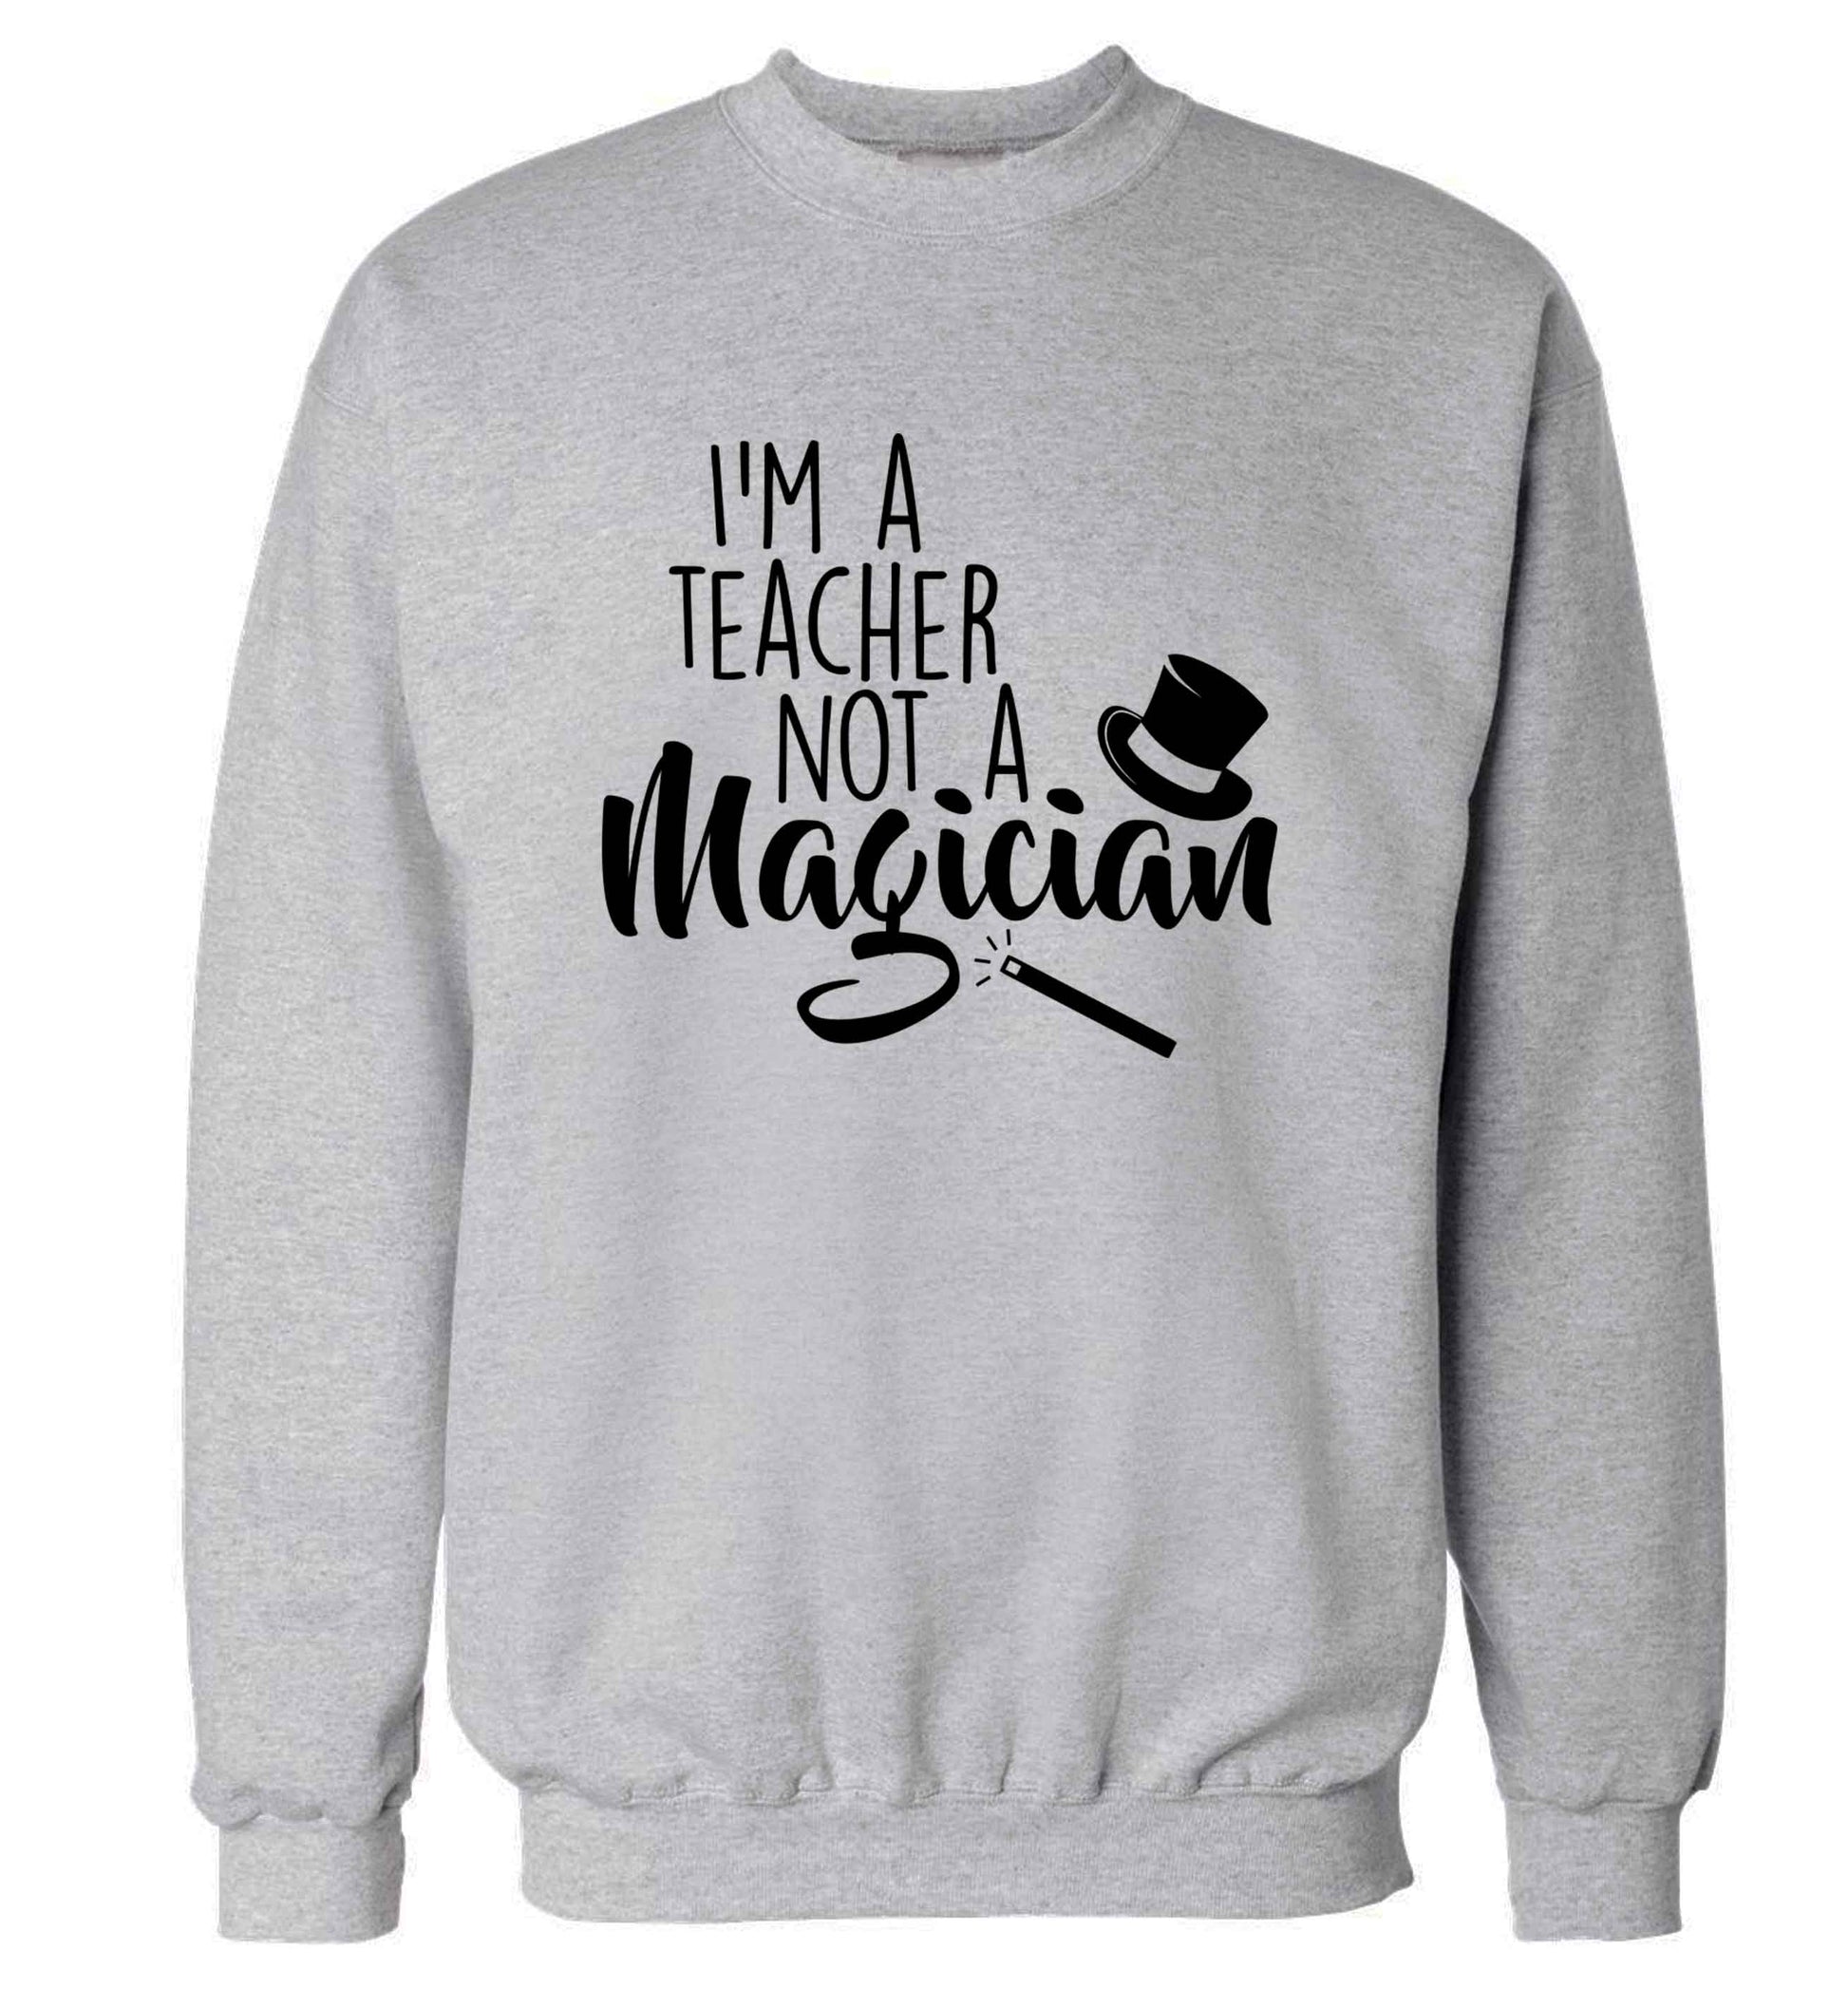 I'm a teacher not a magician adult's unisex grey sweater 2XL